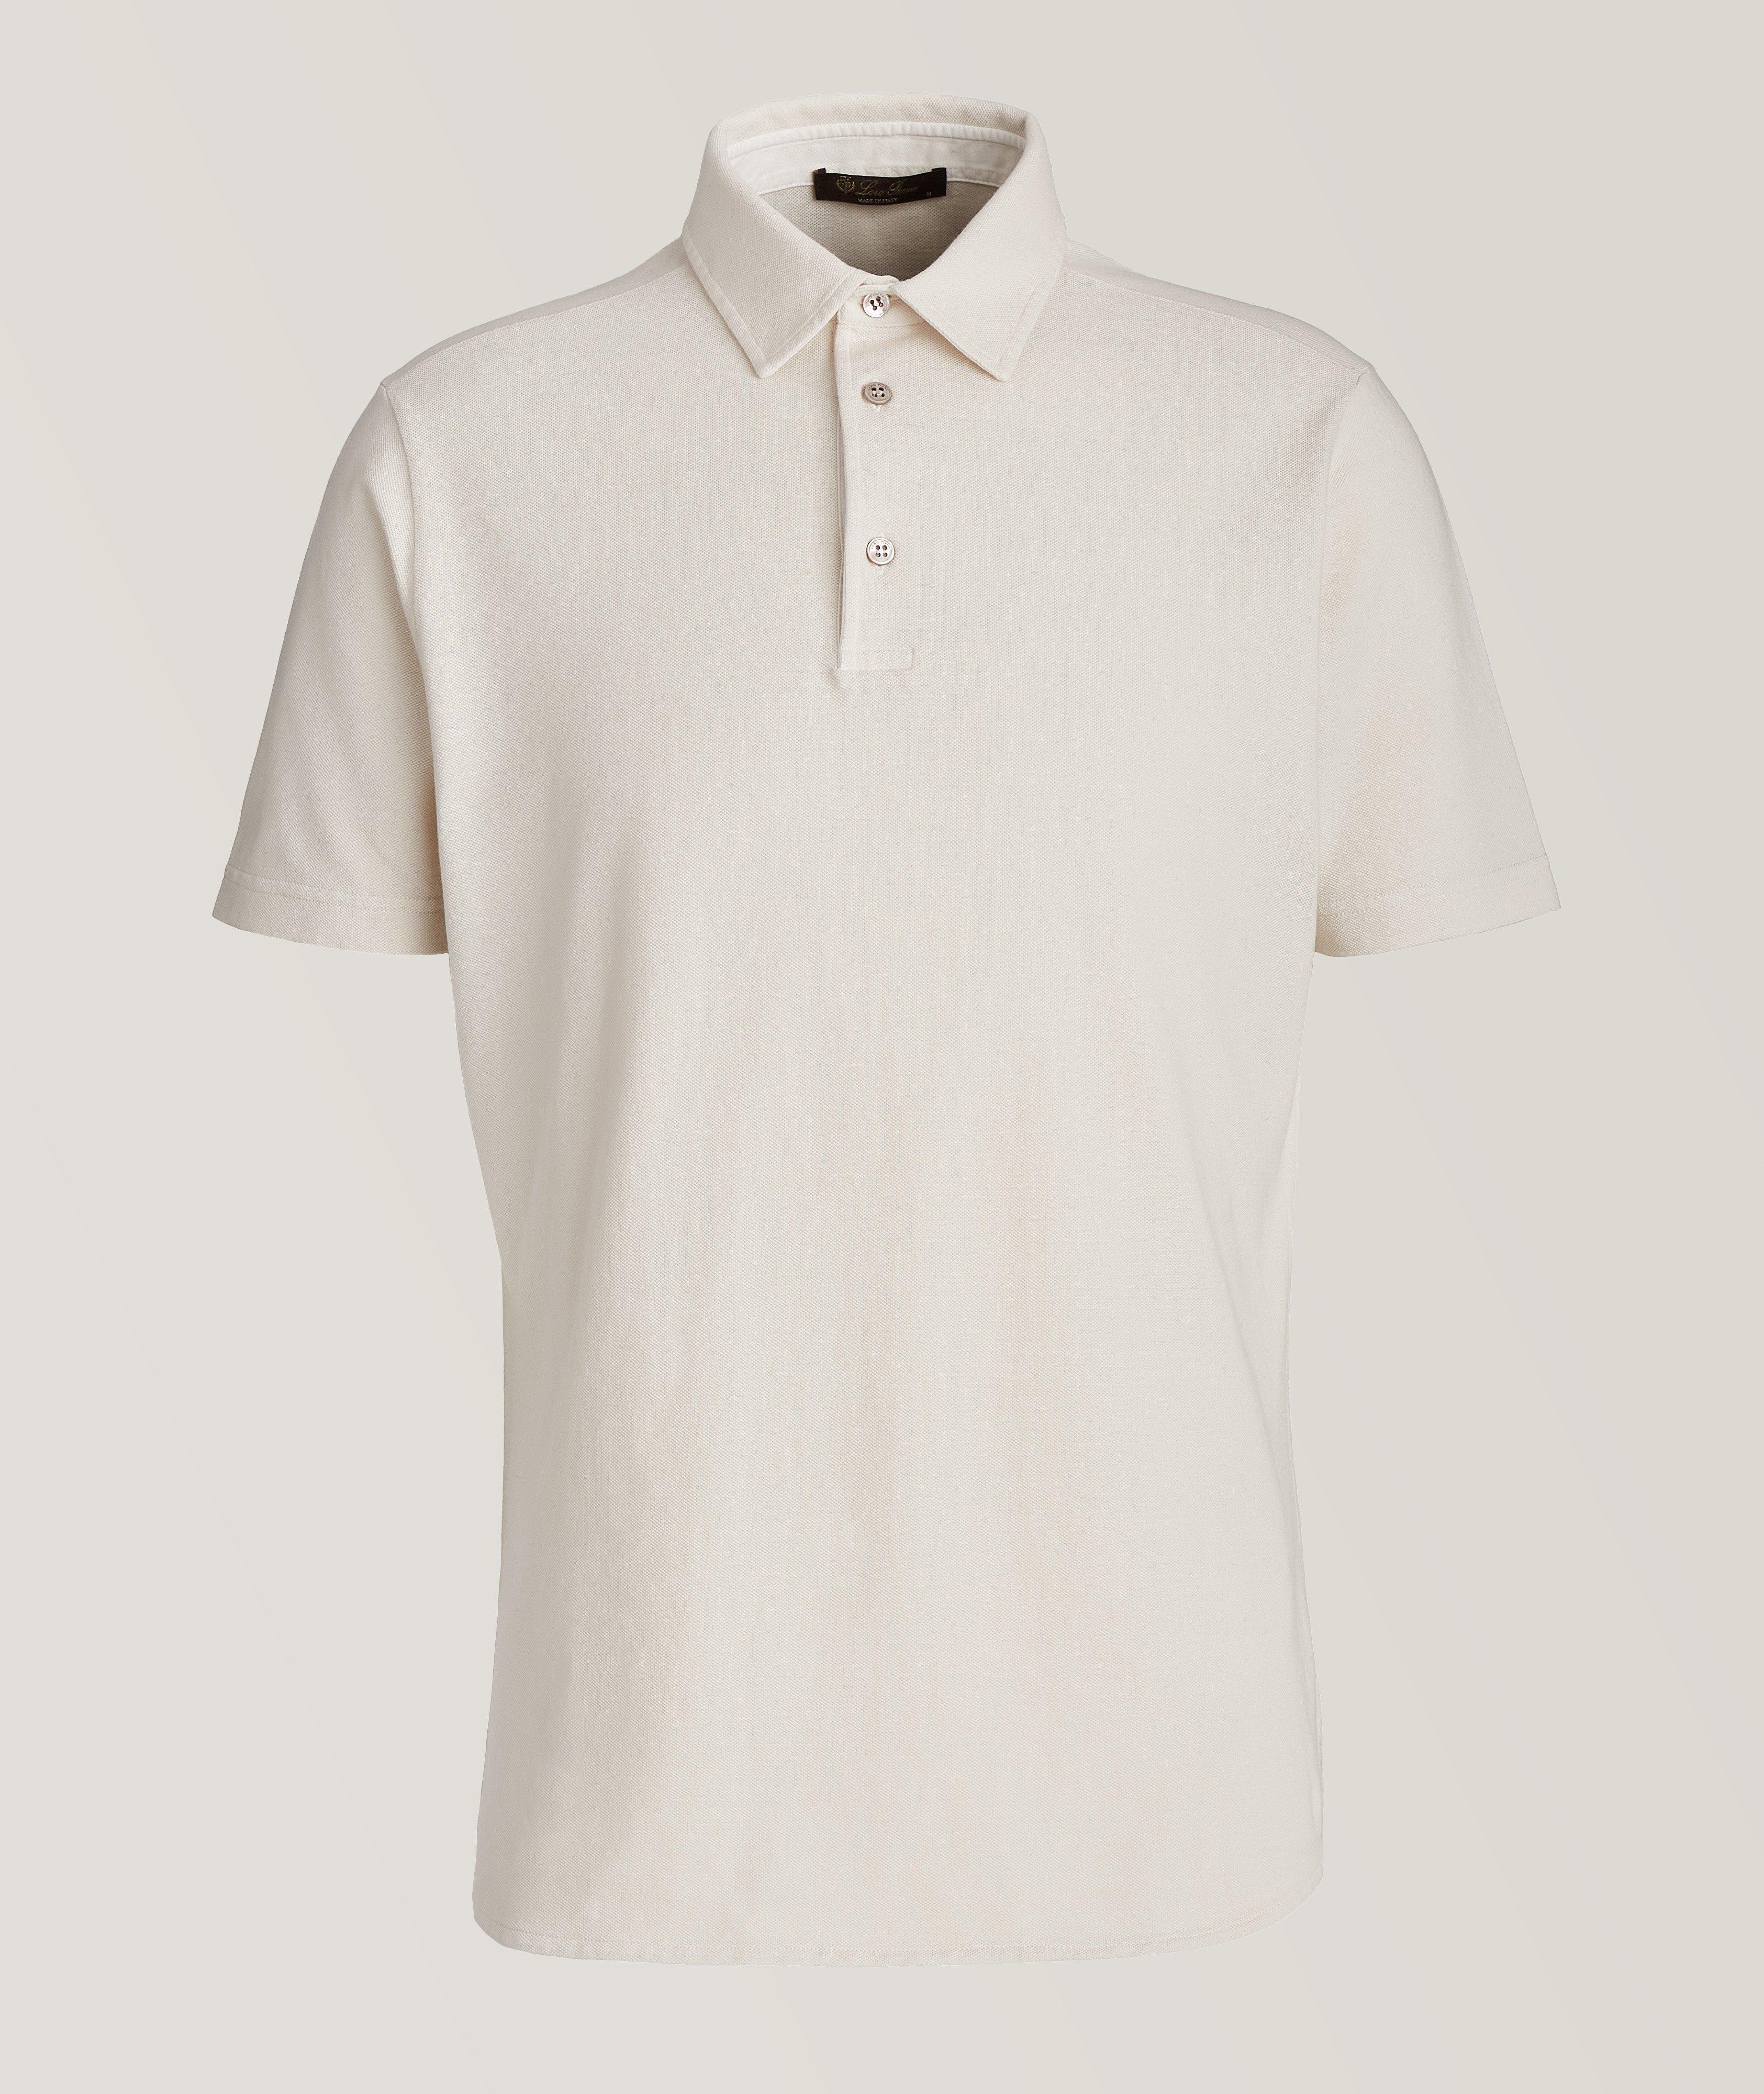 Short-Sleeve Cotton Pique Polo image 0